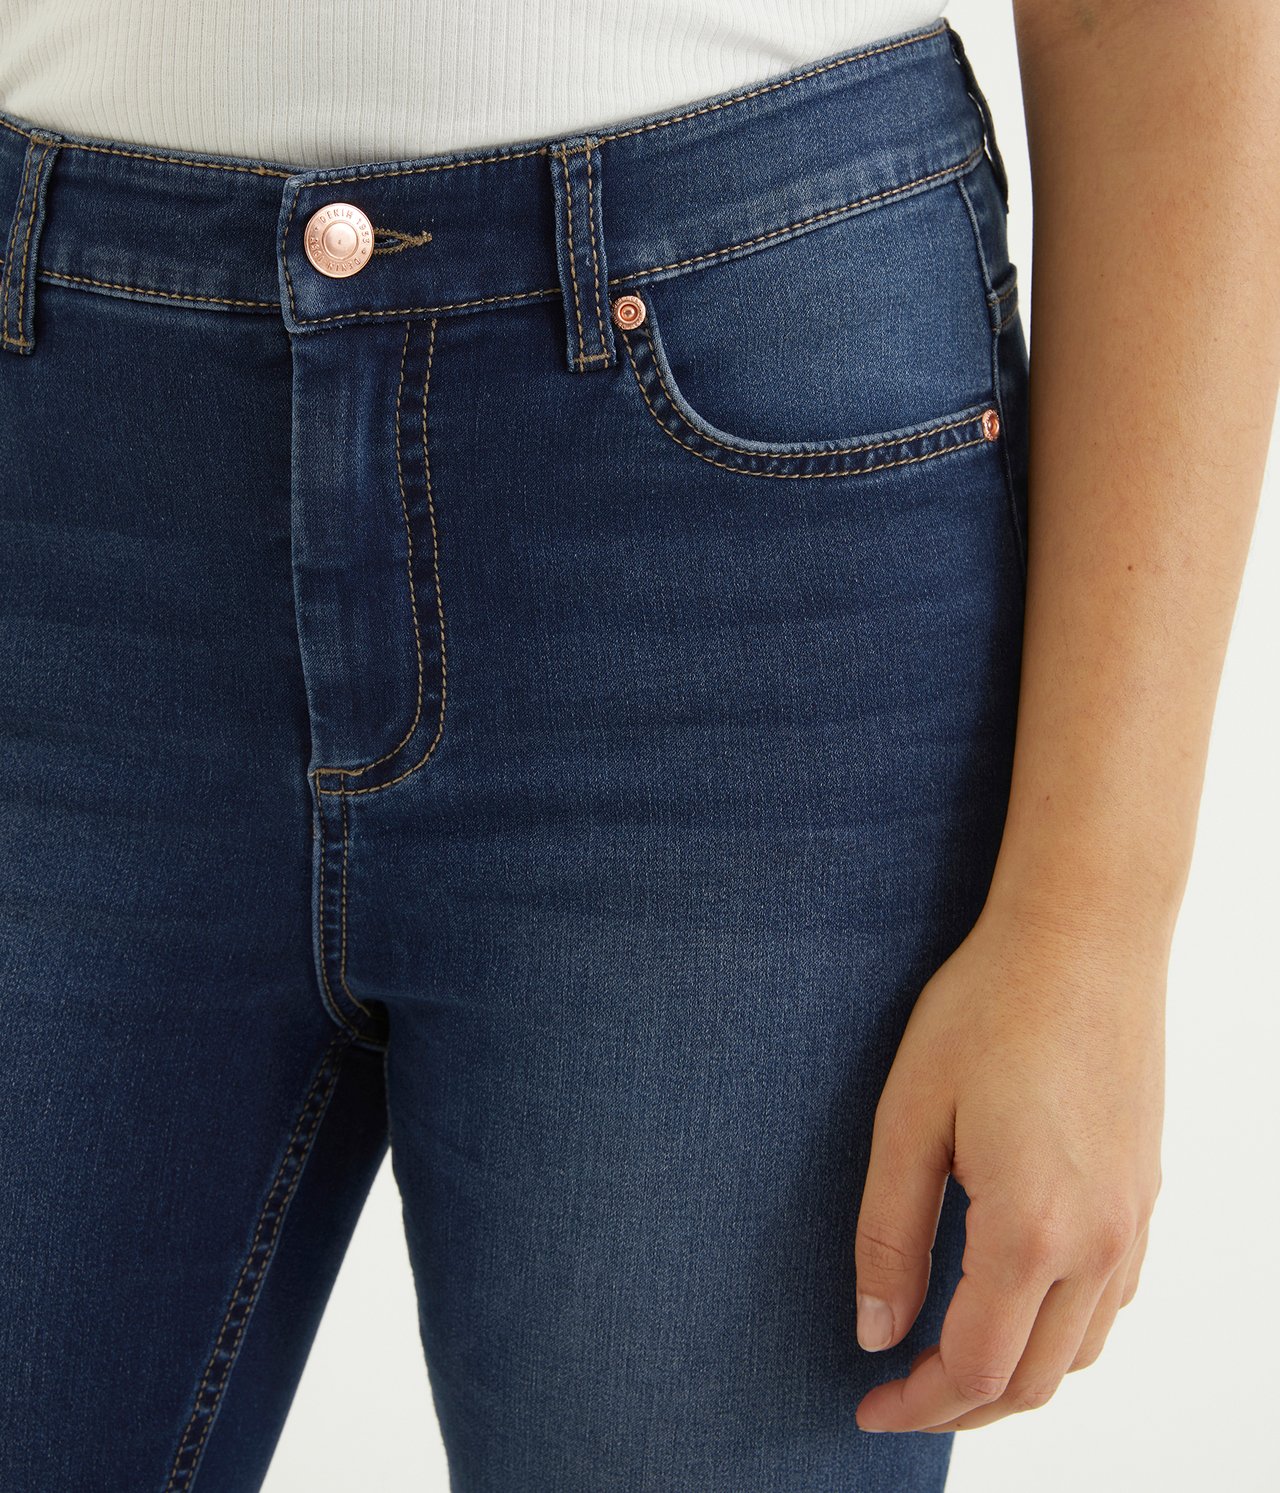 Super slim jeans short leg - Tumma denimi - 2